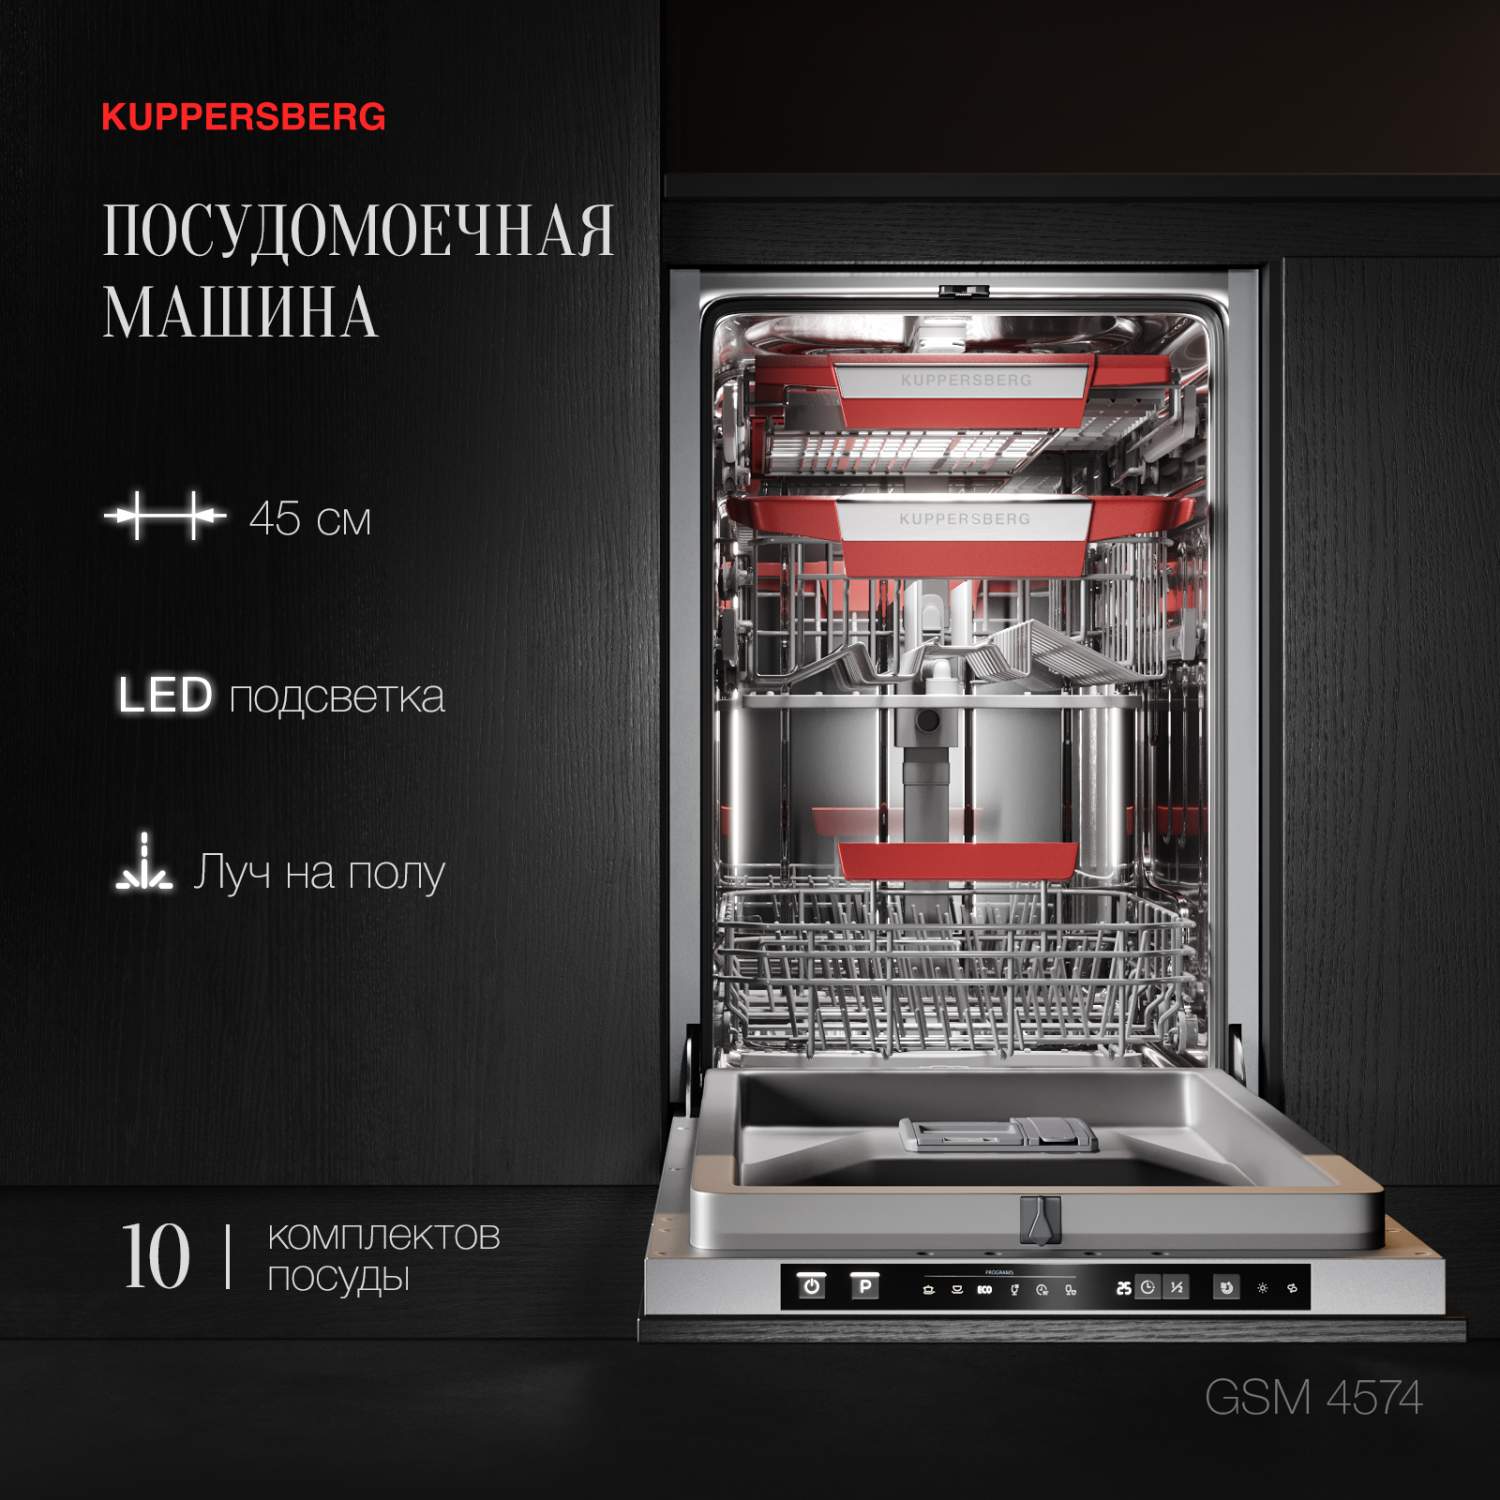 Встраиваемые посудомоечные машины 45 см KUPPERSBERG - купить встраиваемую посудомоечную машину 45 см Куперсберг, цены в Москве на Мегамаркет